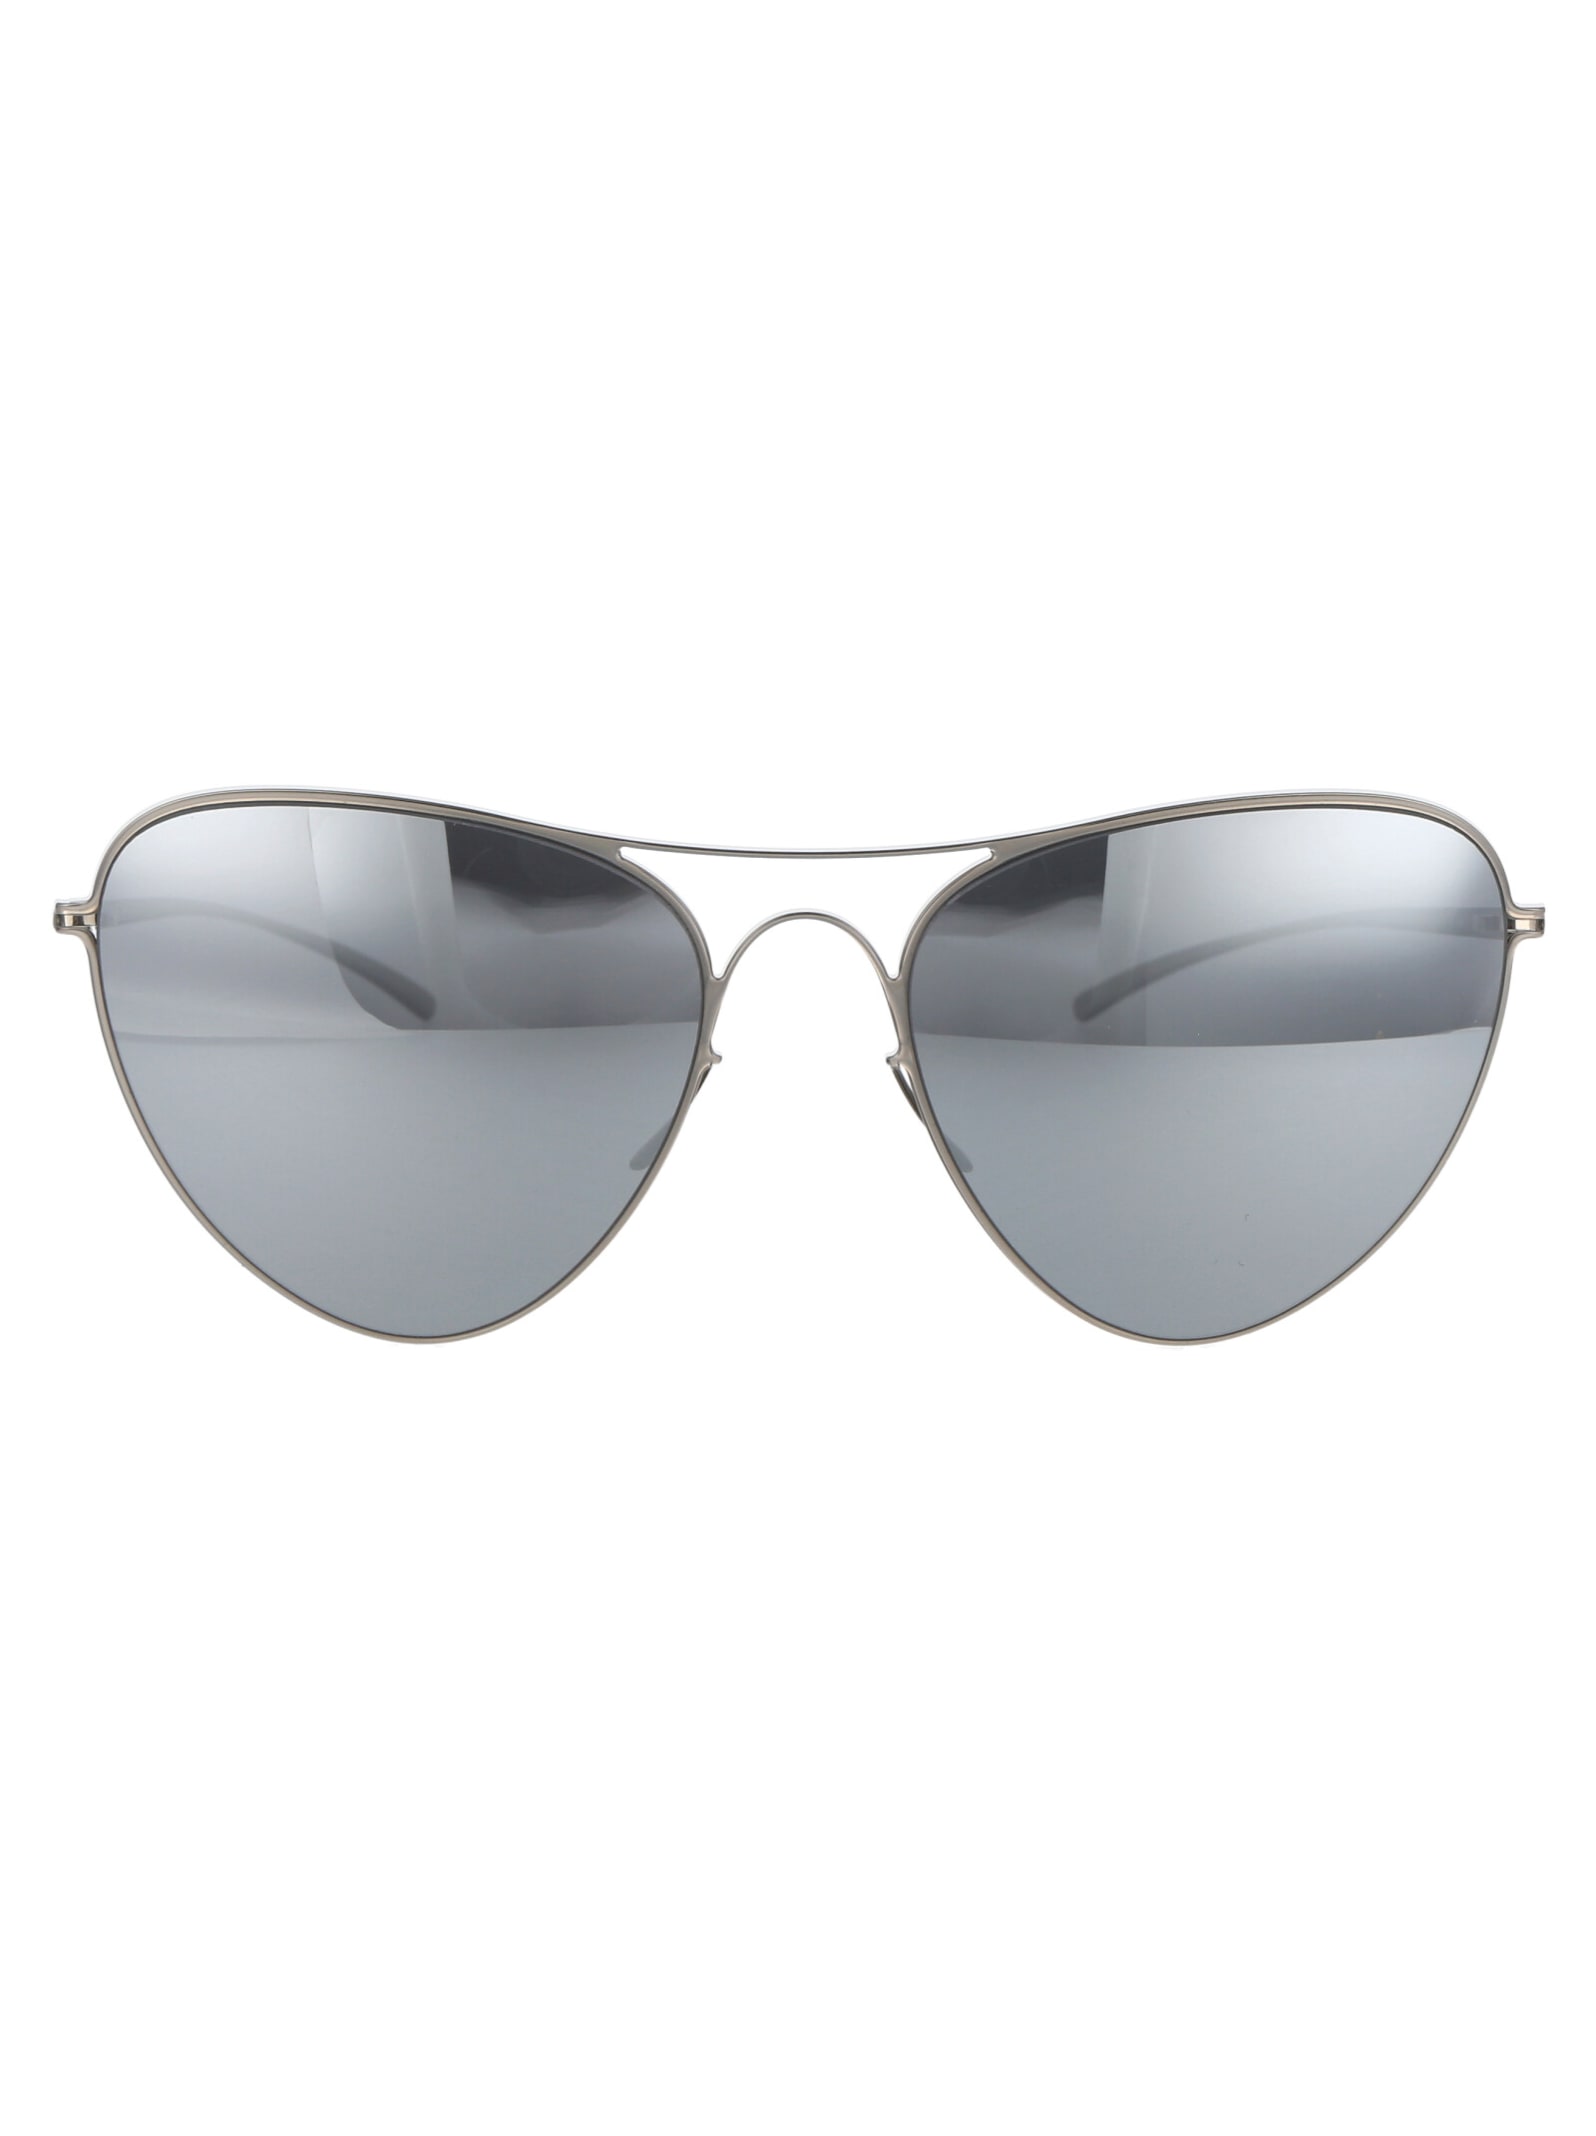 Shop Mykita Mmesse015 Sunglasses In 187 E1 Silver Silver Flash